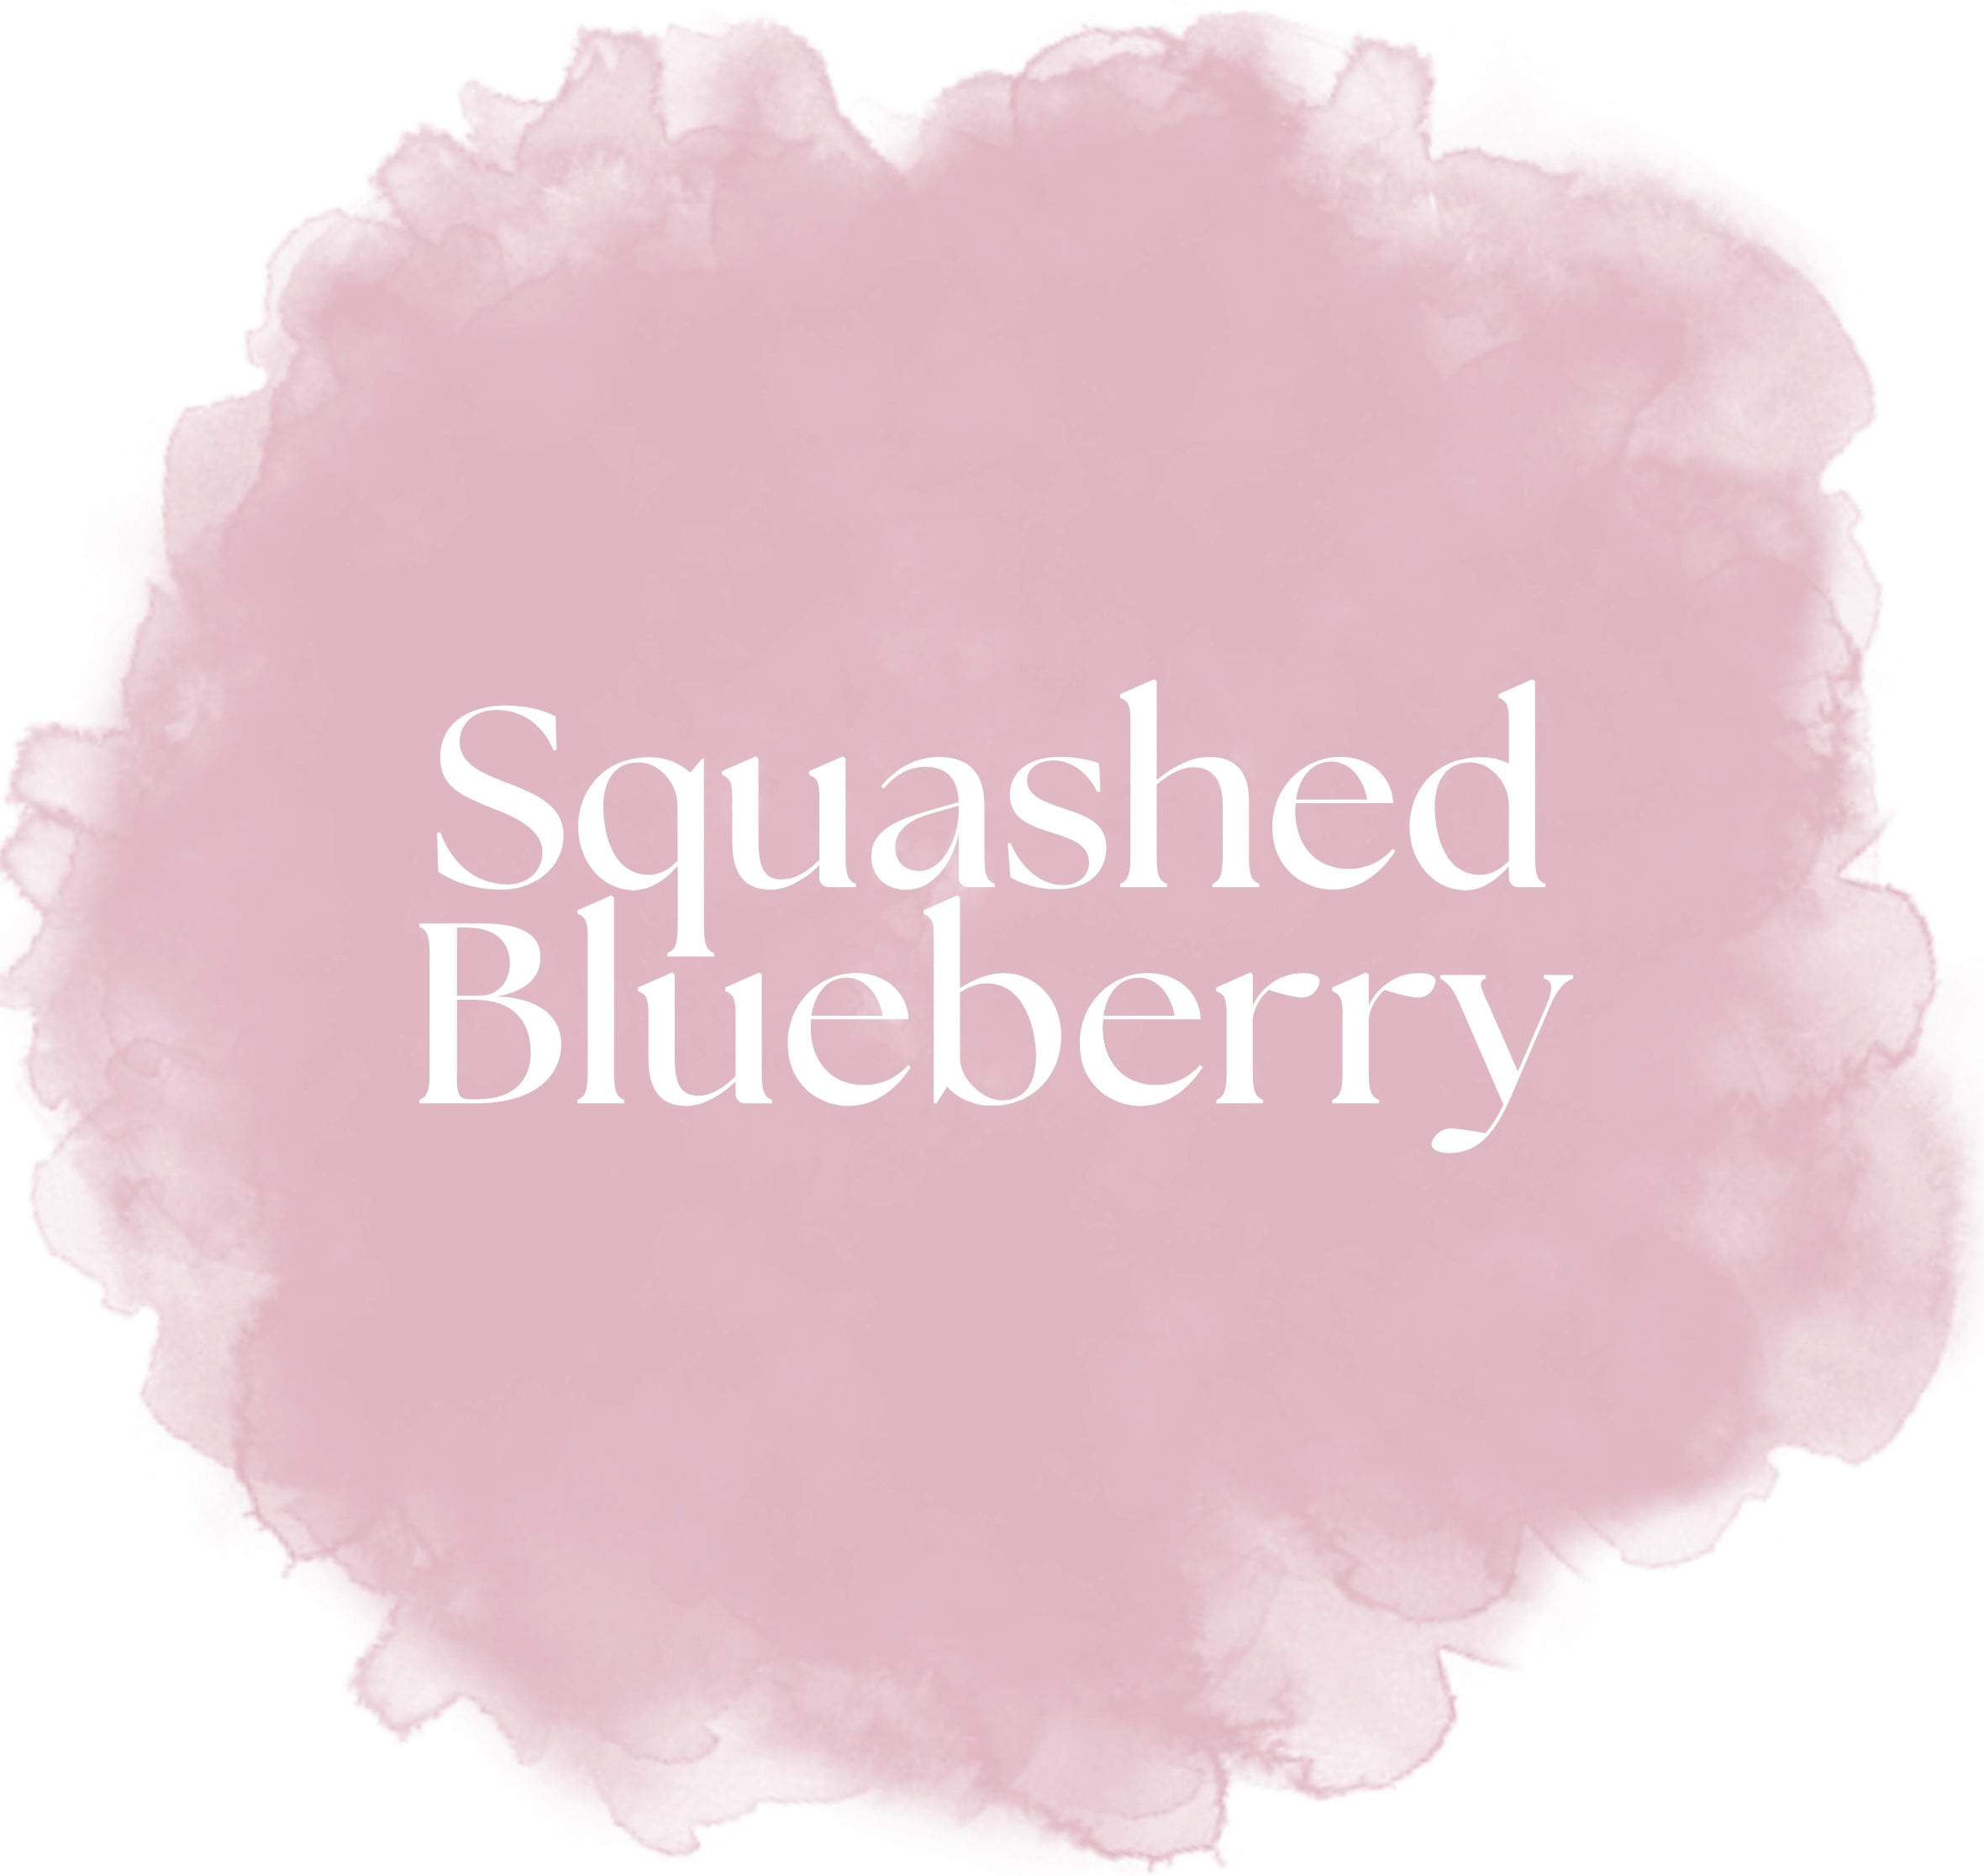 Squashed Blueberry